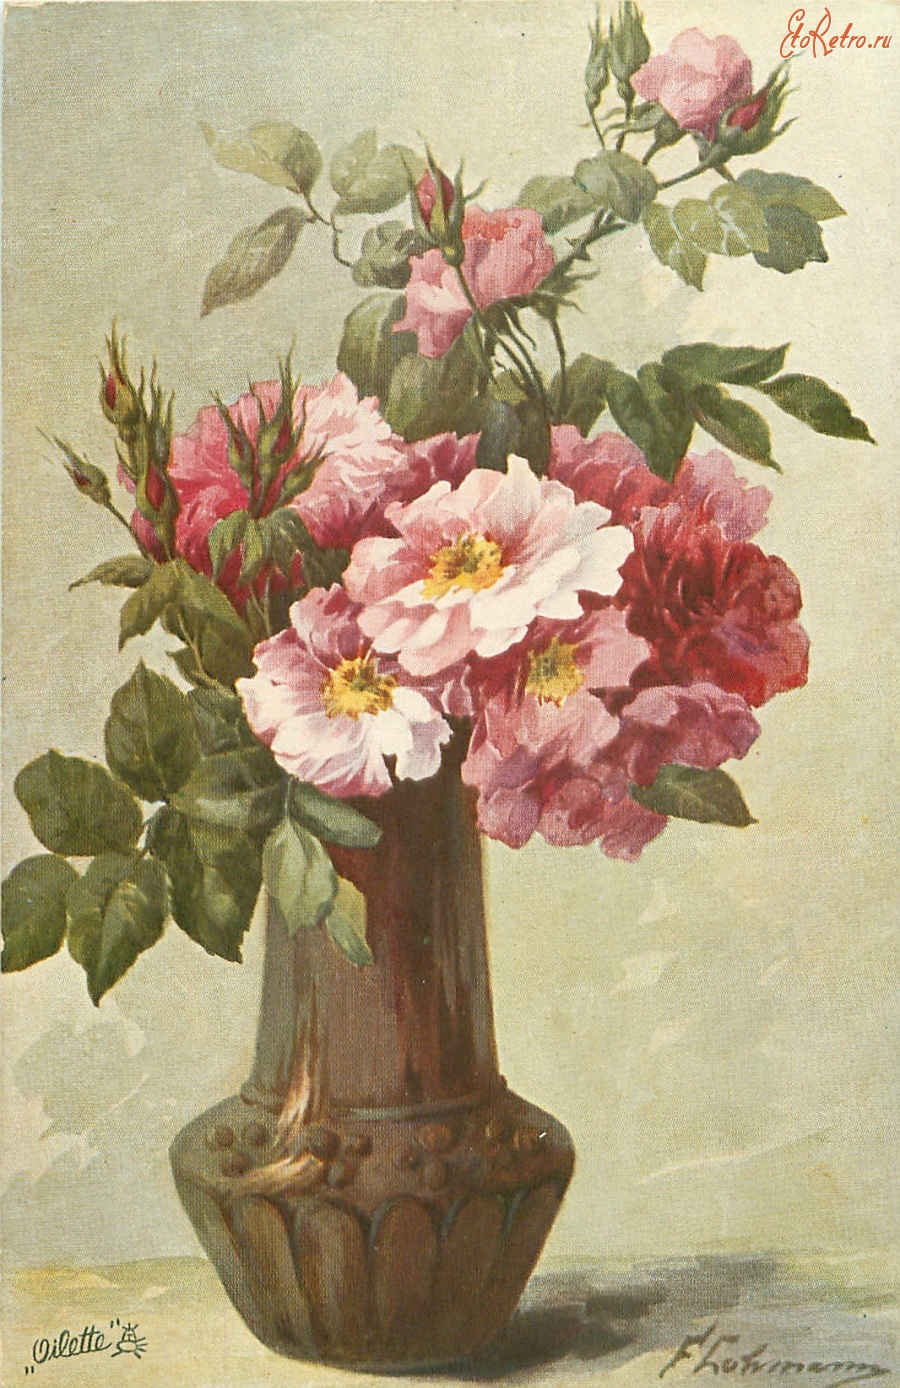 Ретро открытки - Белые и красные французские розы в коричневой вазе